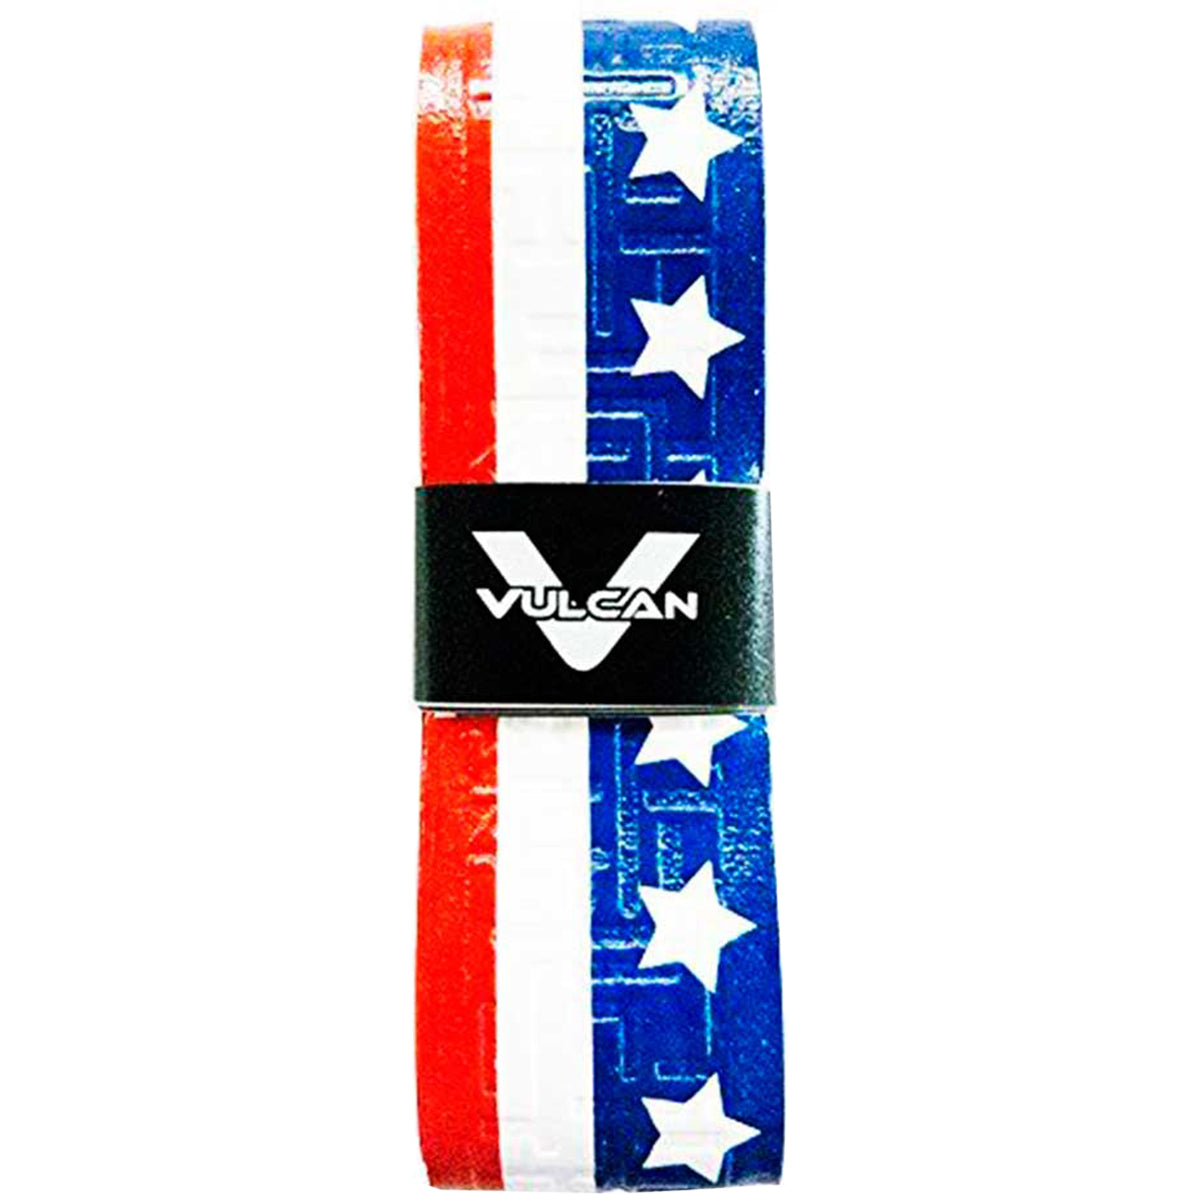 Vulcan USA Series 0.5mm Ultralight Advanced Polymer Bat Grip Tape Wrap Vulcan